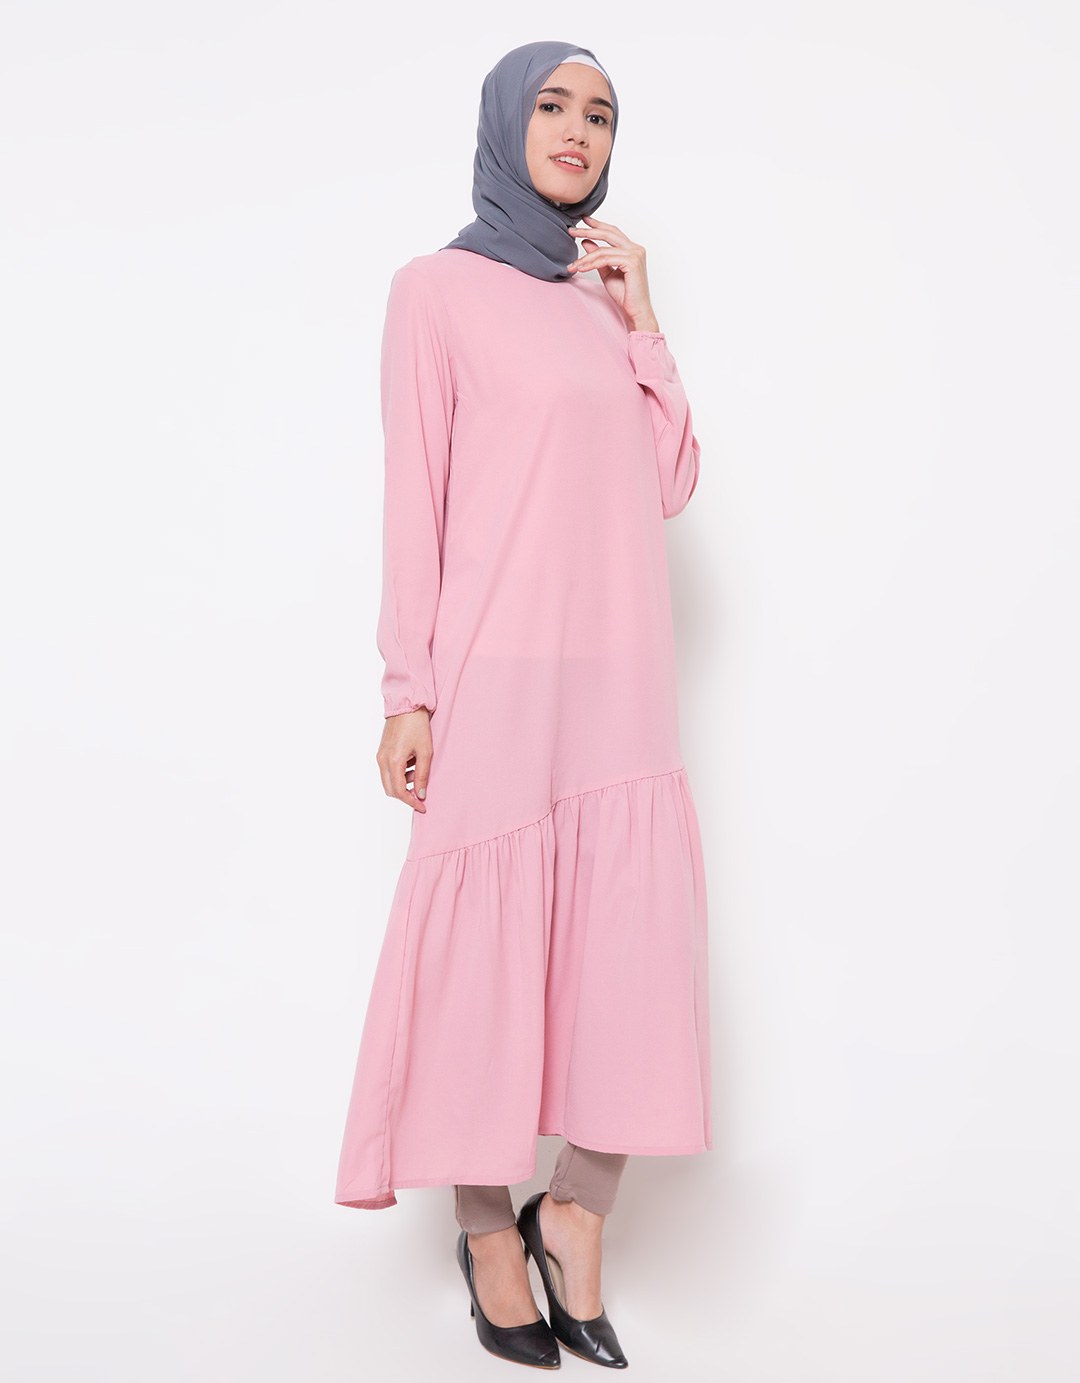 Bentuk Harga Baju Lebaran 9fdy Baju Lebaran Untuk orang Tua Gambar islami